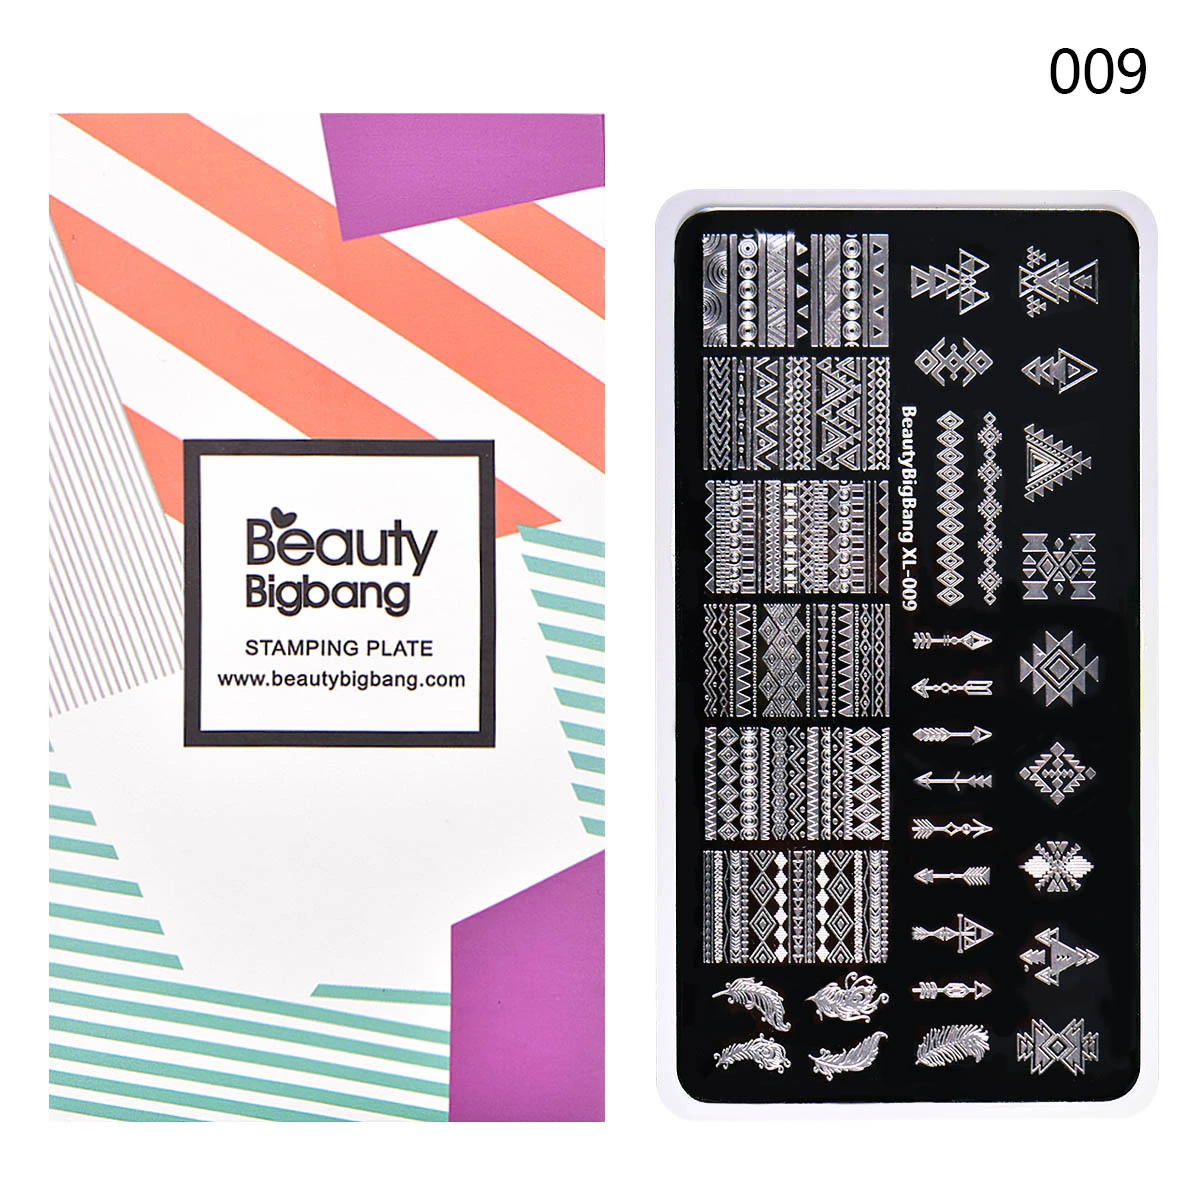 Beautybigbang набор пластин для штамповки 10 шт. различные цветочные полосы изображения дизайн ногтей трафарет шаблоны+ штамп пластины держатель Чехол Набор